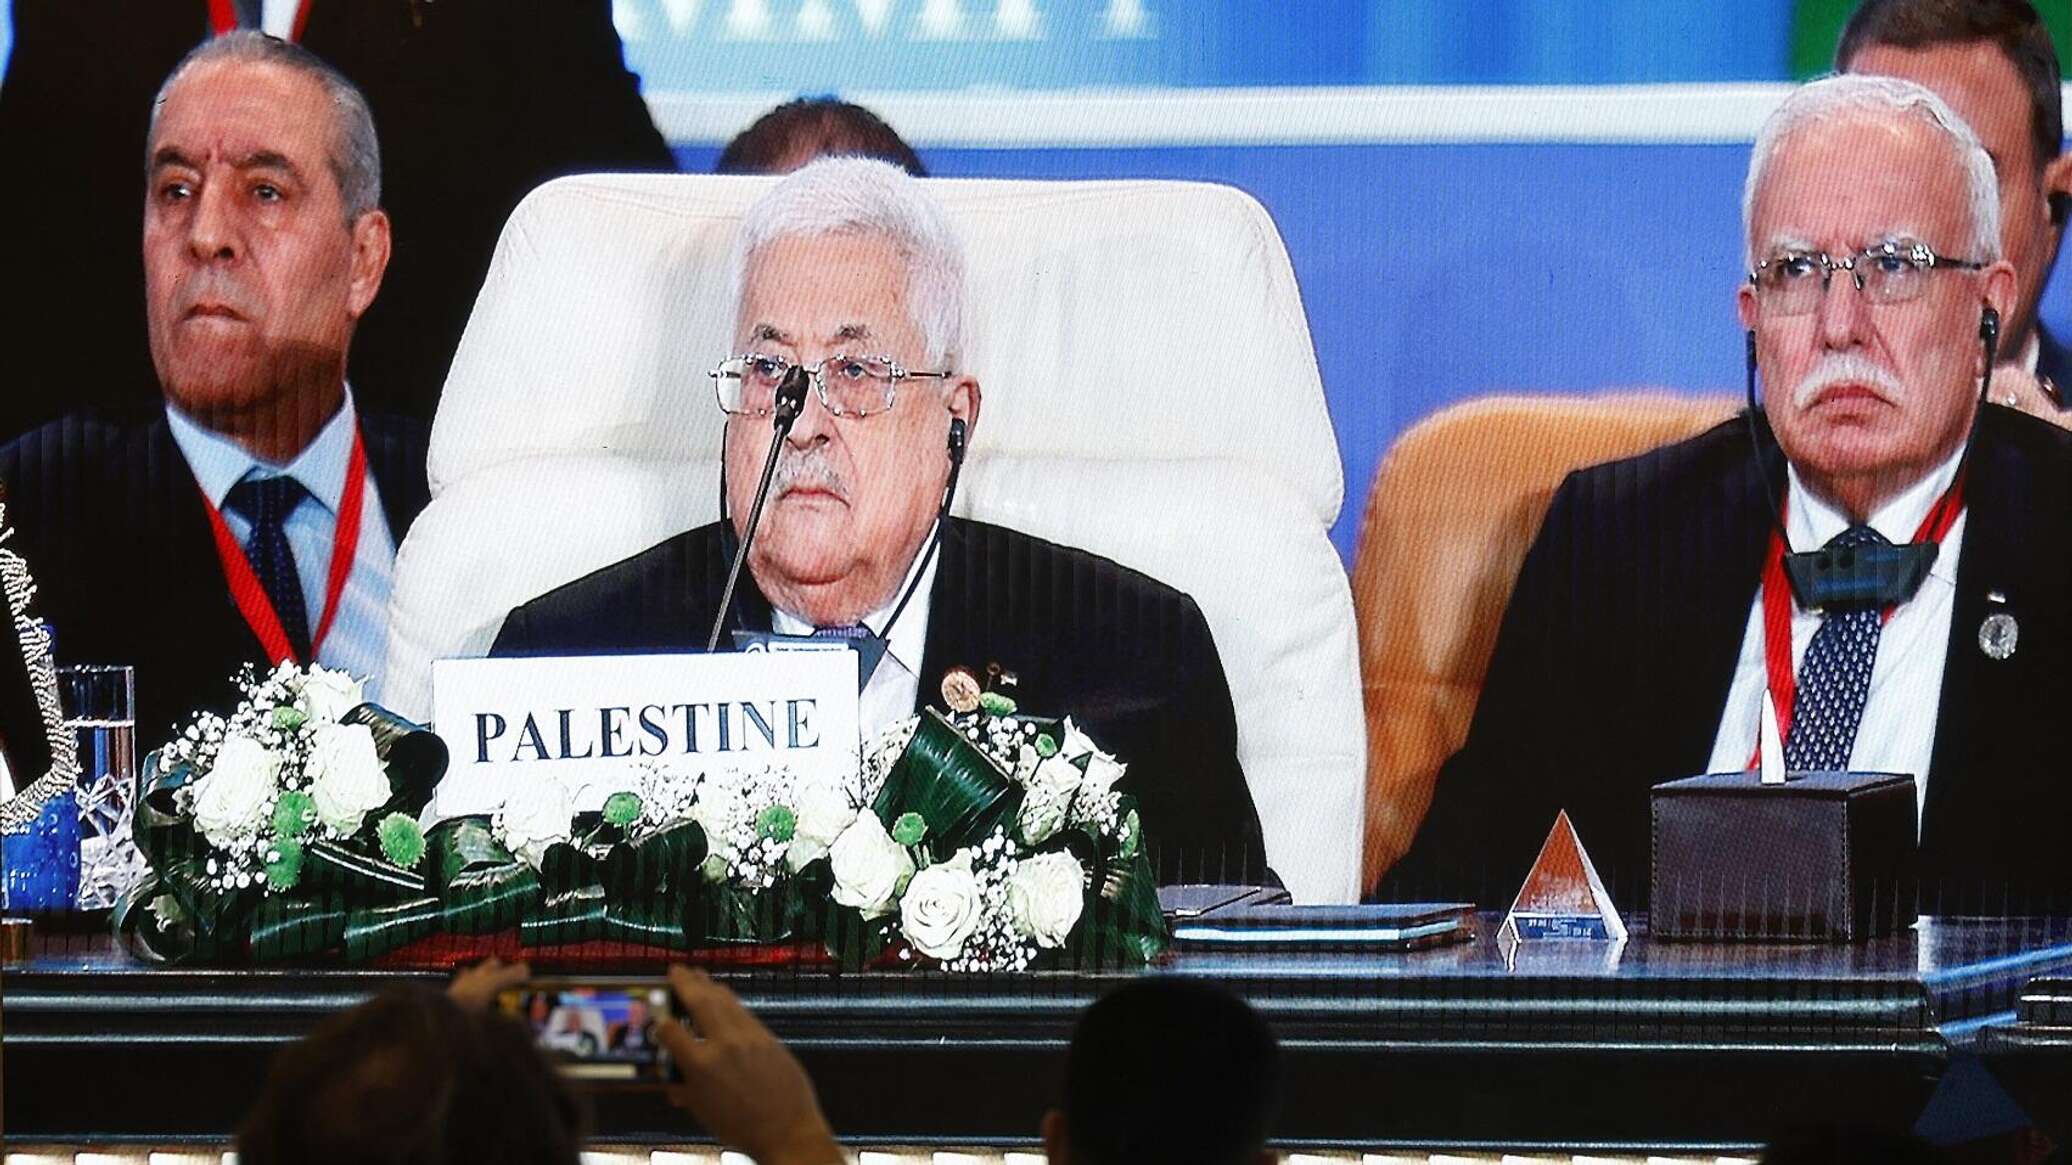 الرئيس الفلسطيني: إسرائيل ردت على القرار الأممي باجتياح بري في غزة ونطالب بعقد قمة عربية طارئة